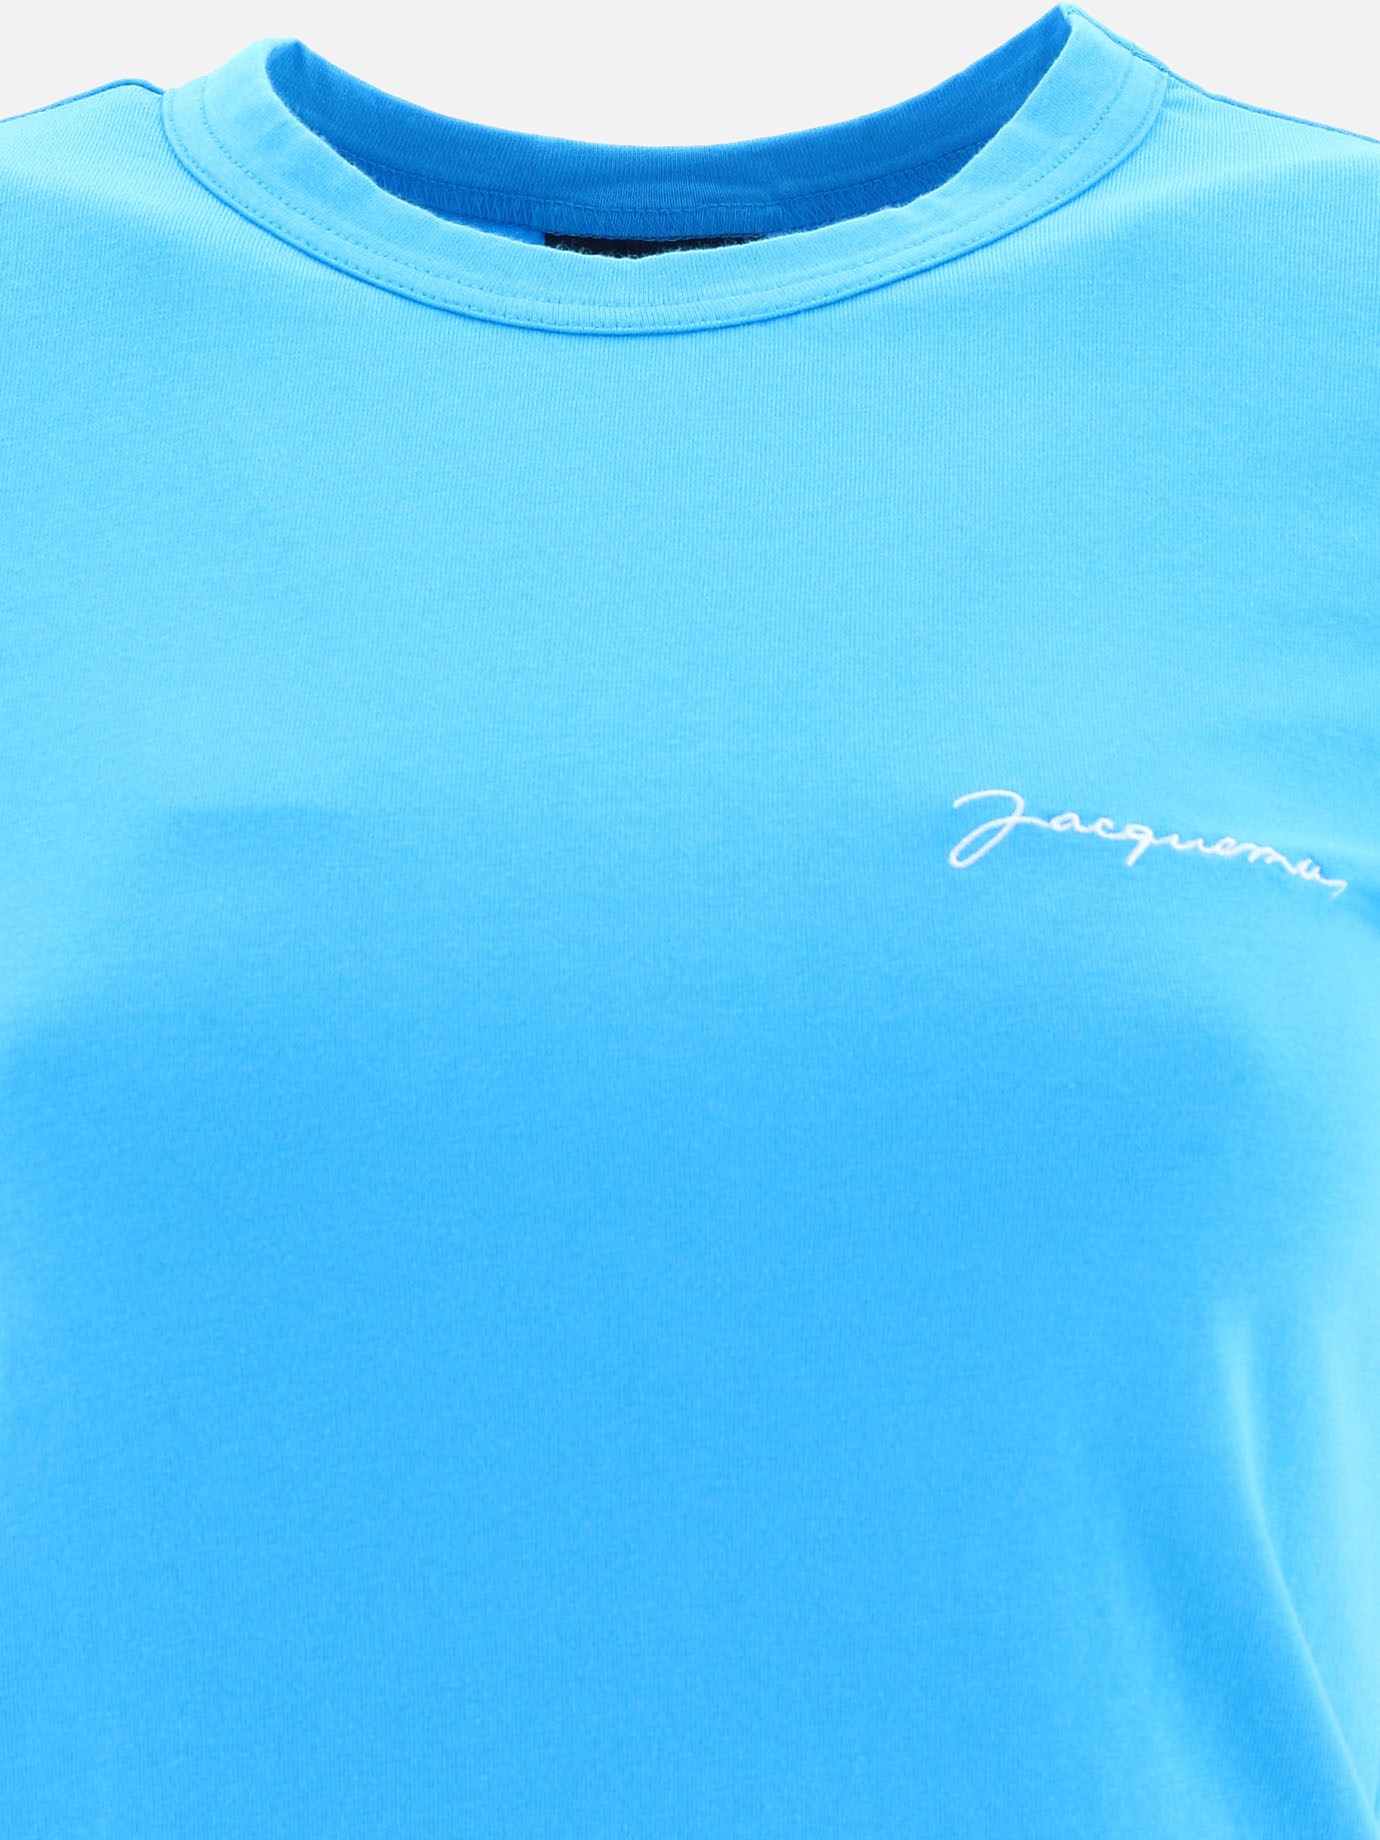  Le T-shirt Jacquemus  t-shirt by Jacquemus